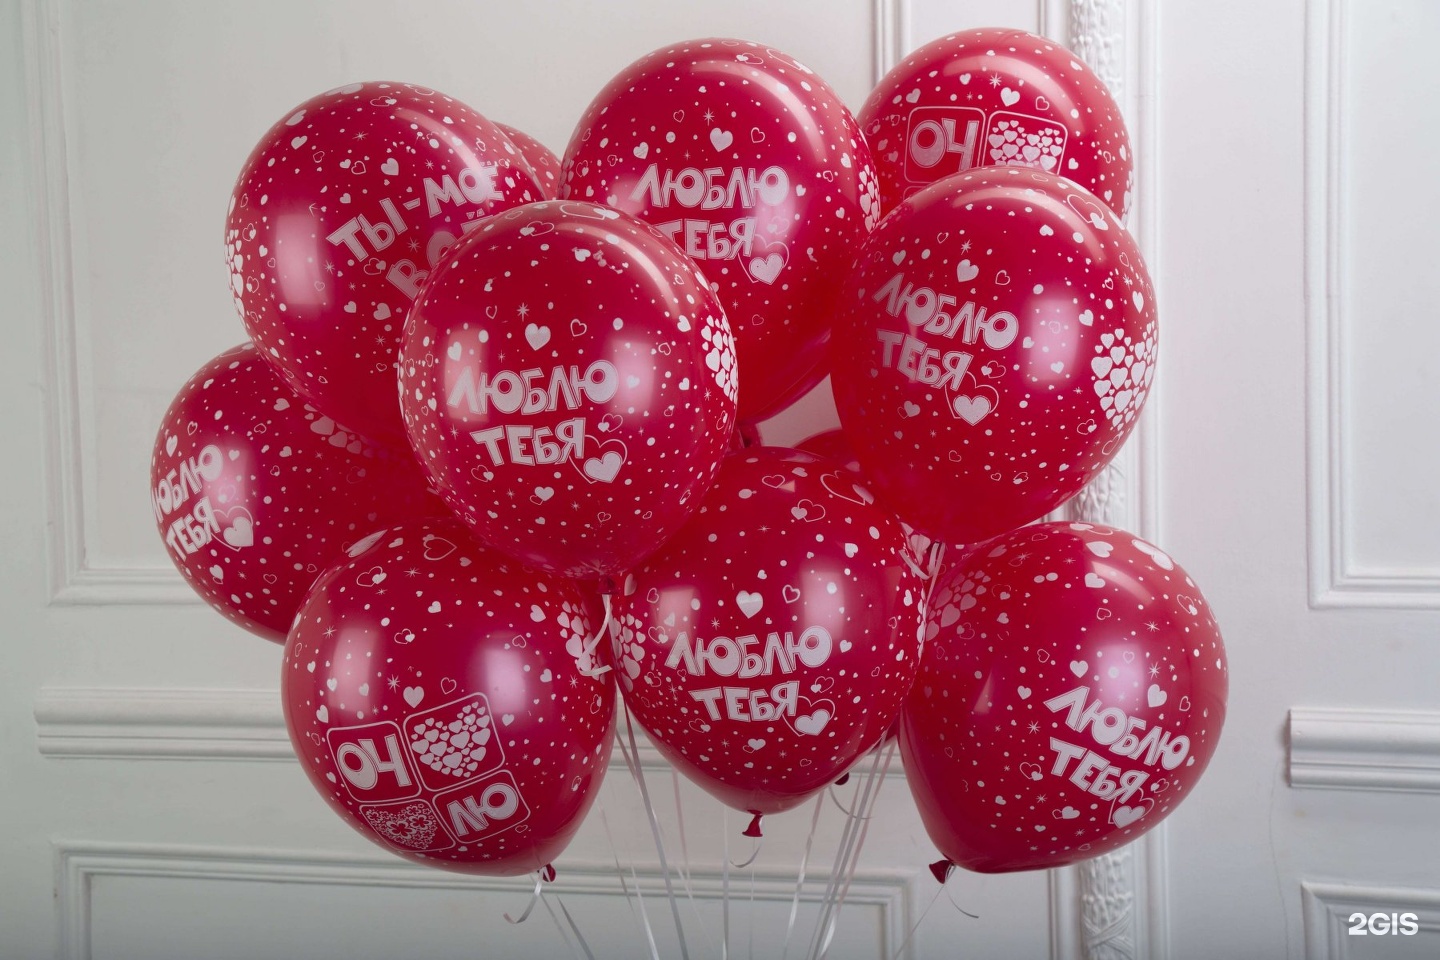 Купить шары в москве недорого с доставкой. Шары с днем рождения. С днём рождения шарики. Красивые шары на день рождения. Шары на юбилей.